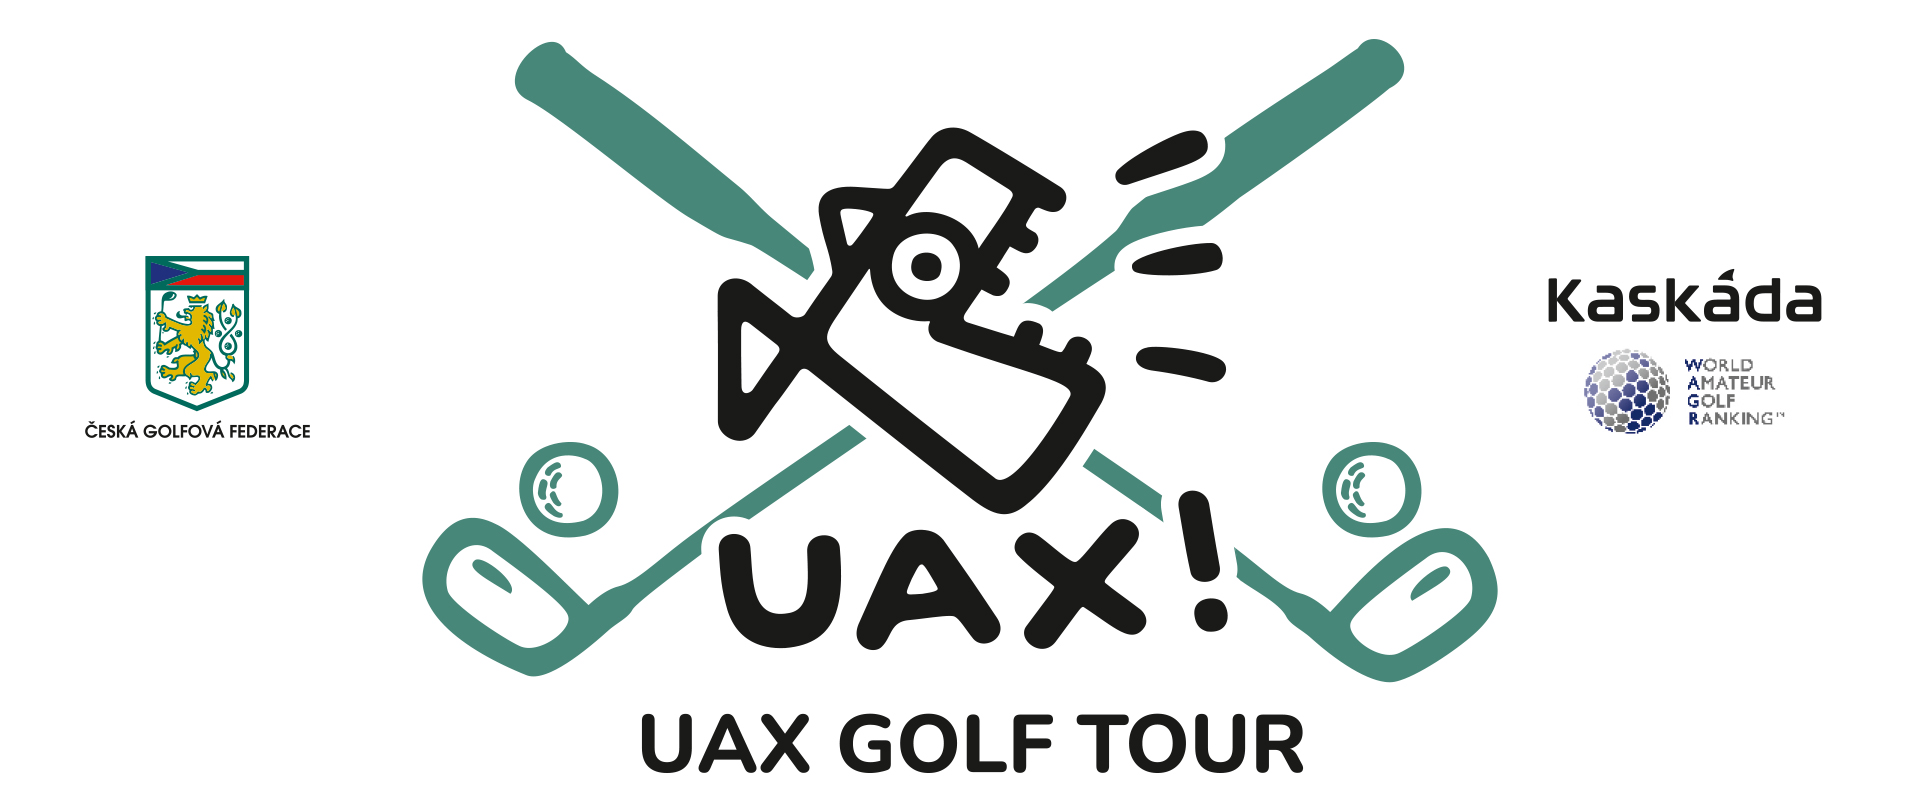 UAX Golf Tour Kaskáda - mistrovská kat. (WAGR) 12.-14.4.